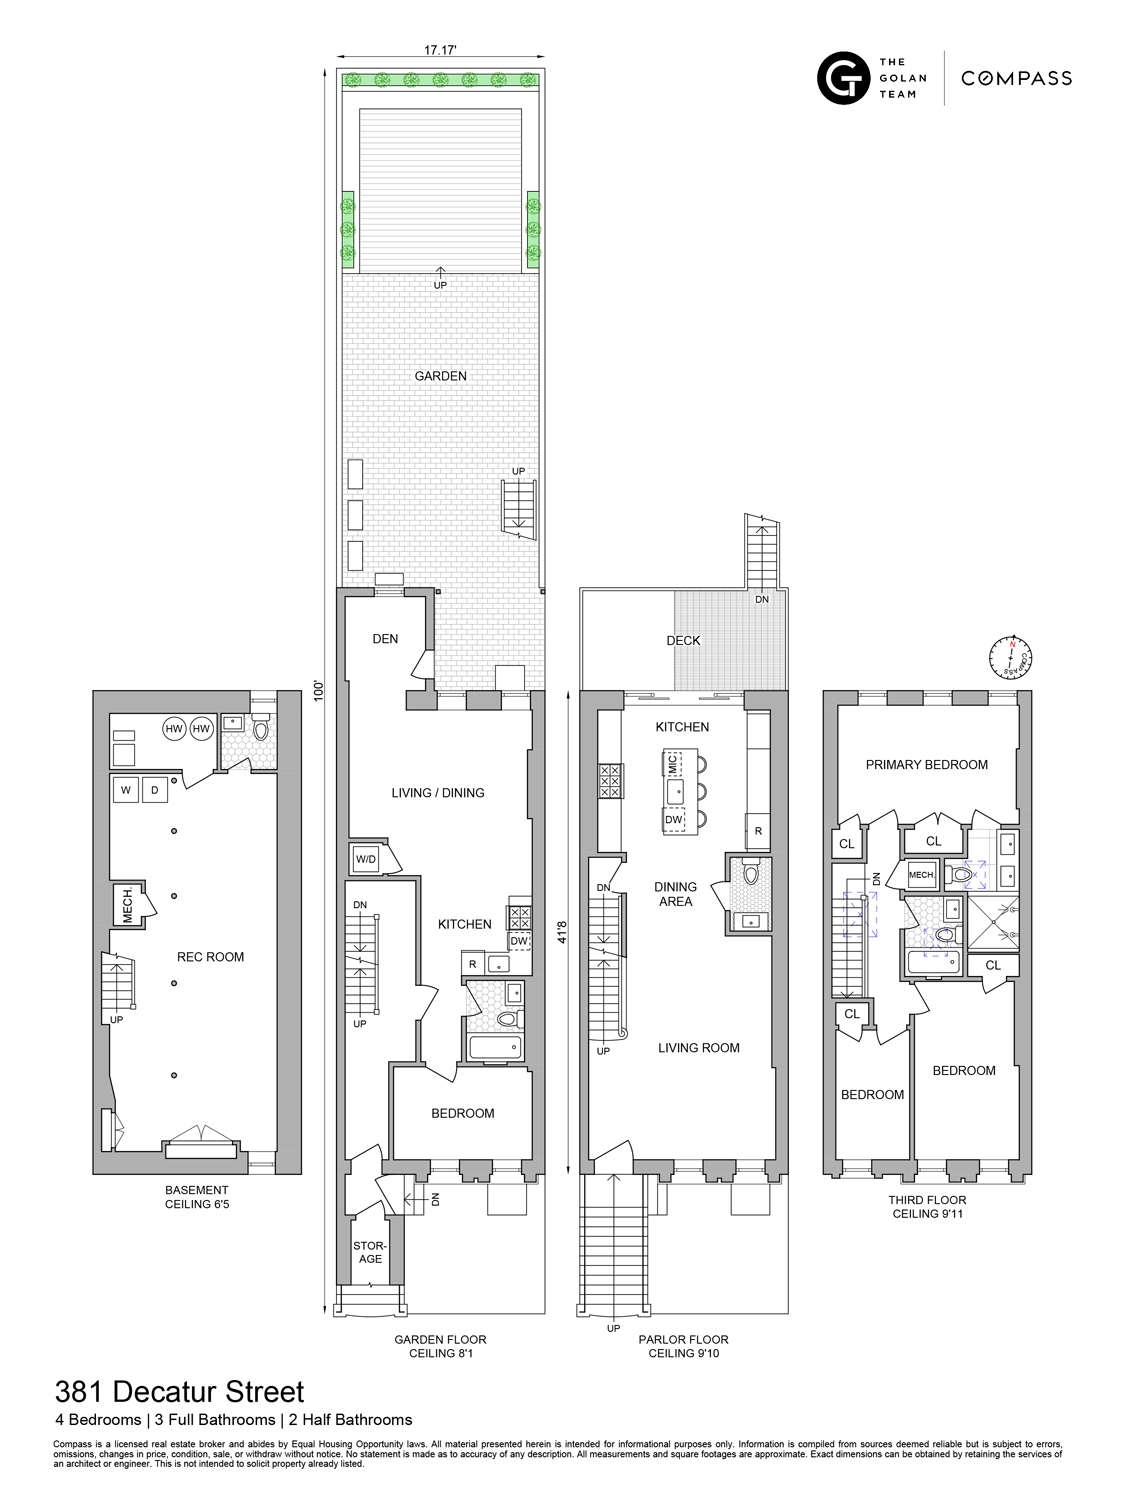 Floorplan for 381 Decatur Street